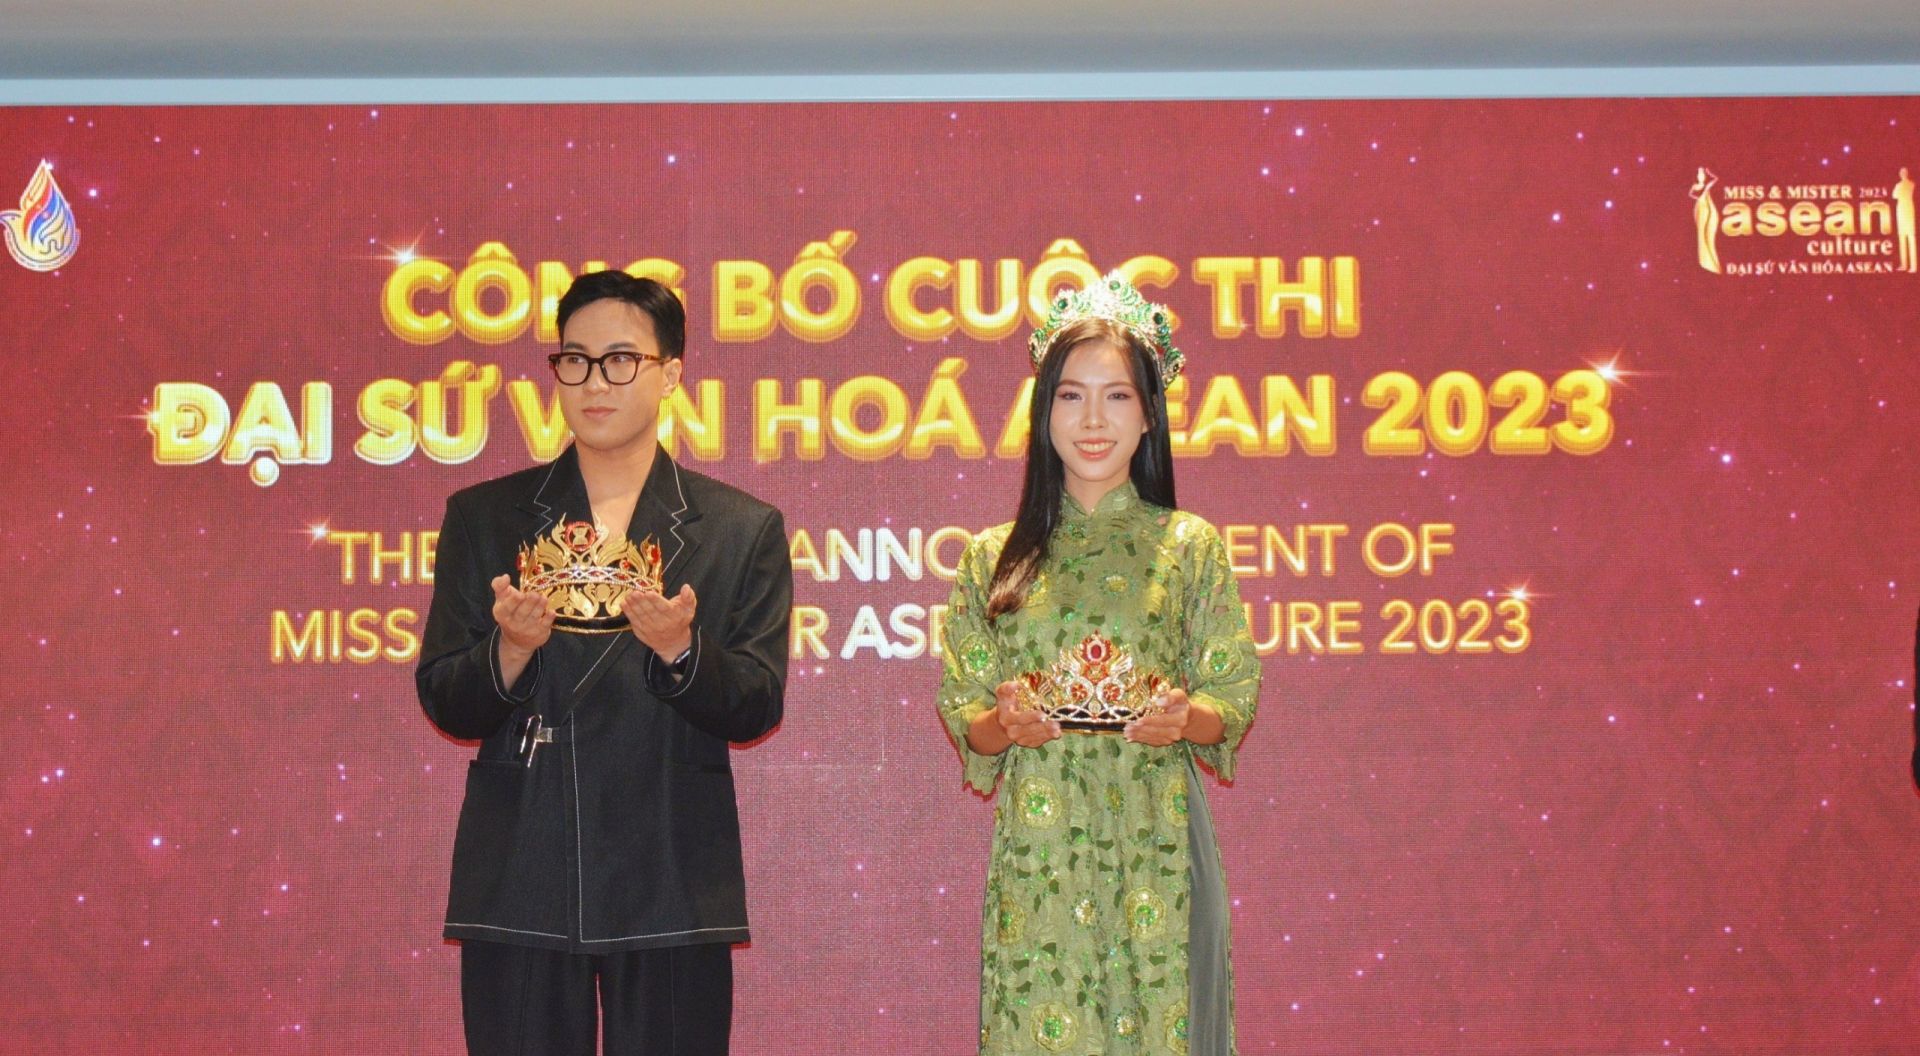 Vương miện dành cho Đại sứ Văn hoá ASEAN năm 2023.